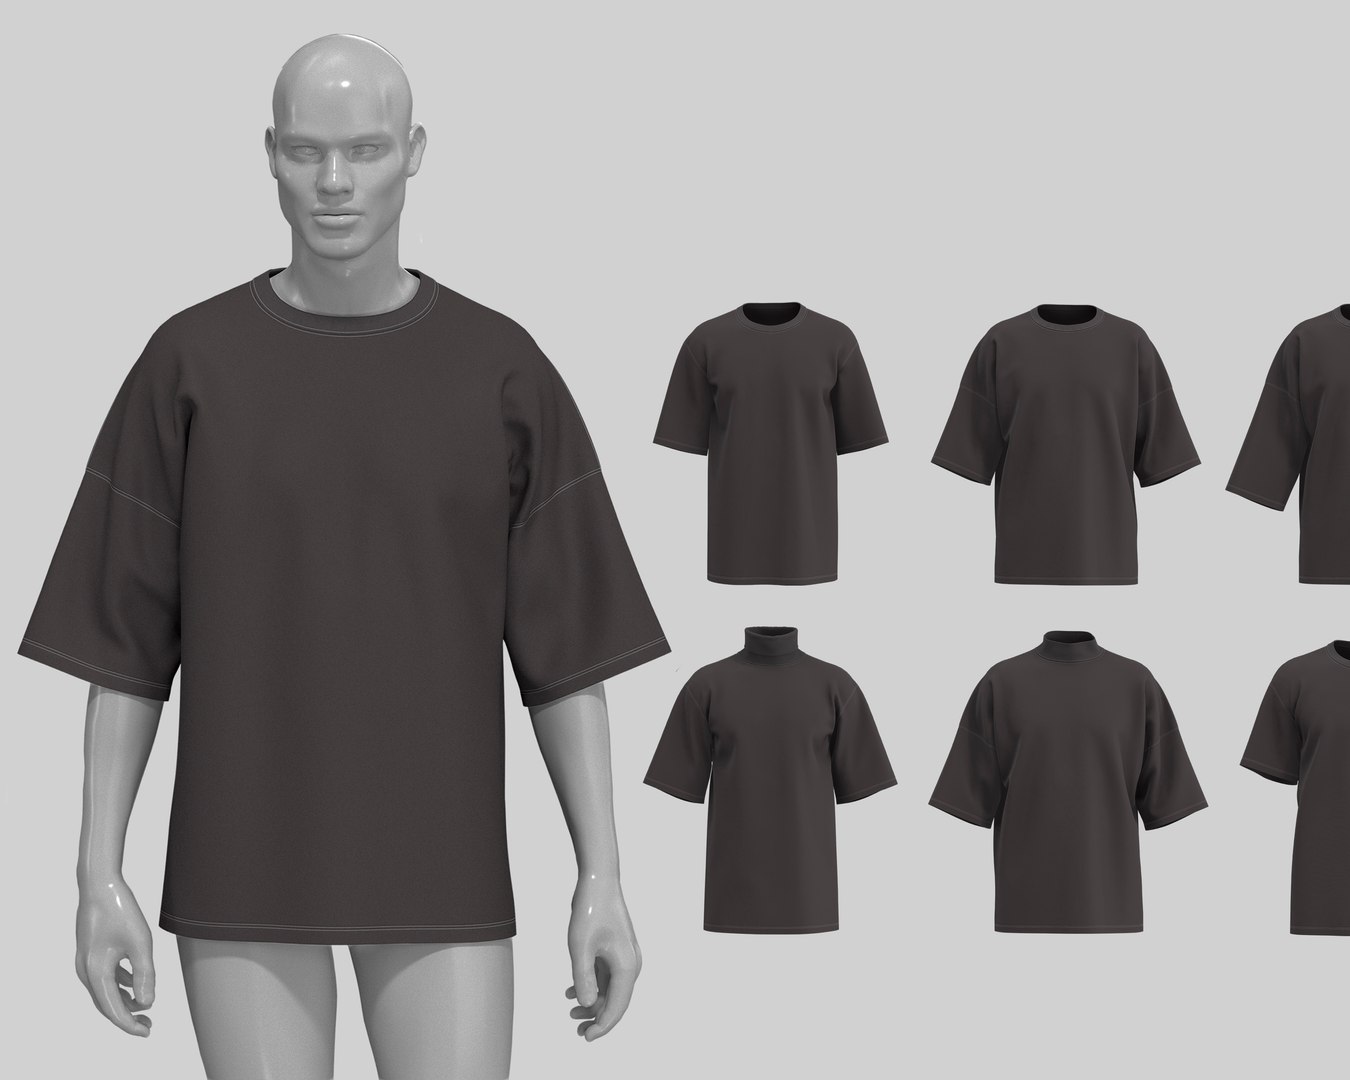 Streetwear Fit Basic T-shirts MD CLO 3D .zprj Project Files 3D - TurboSquid  1736134